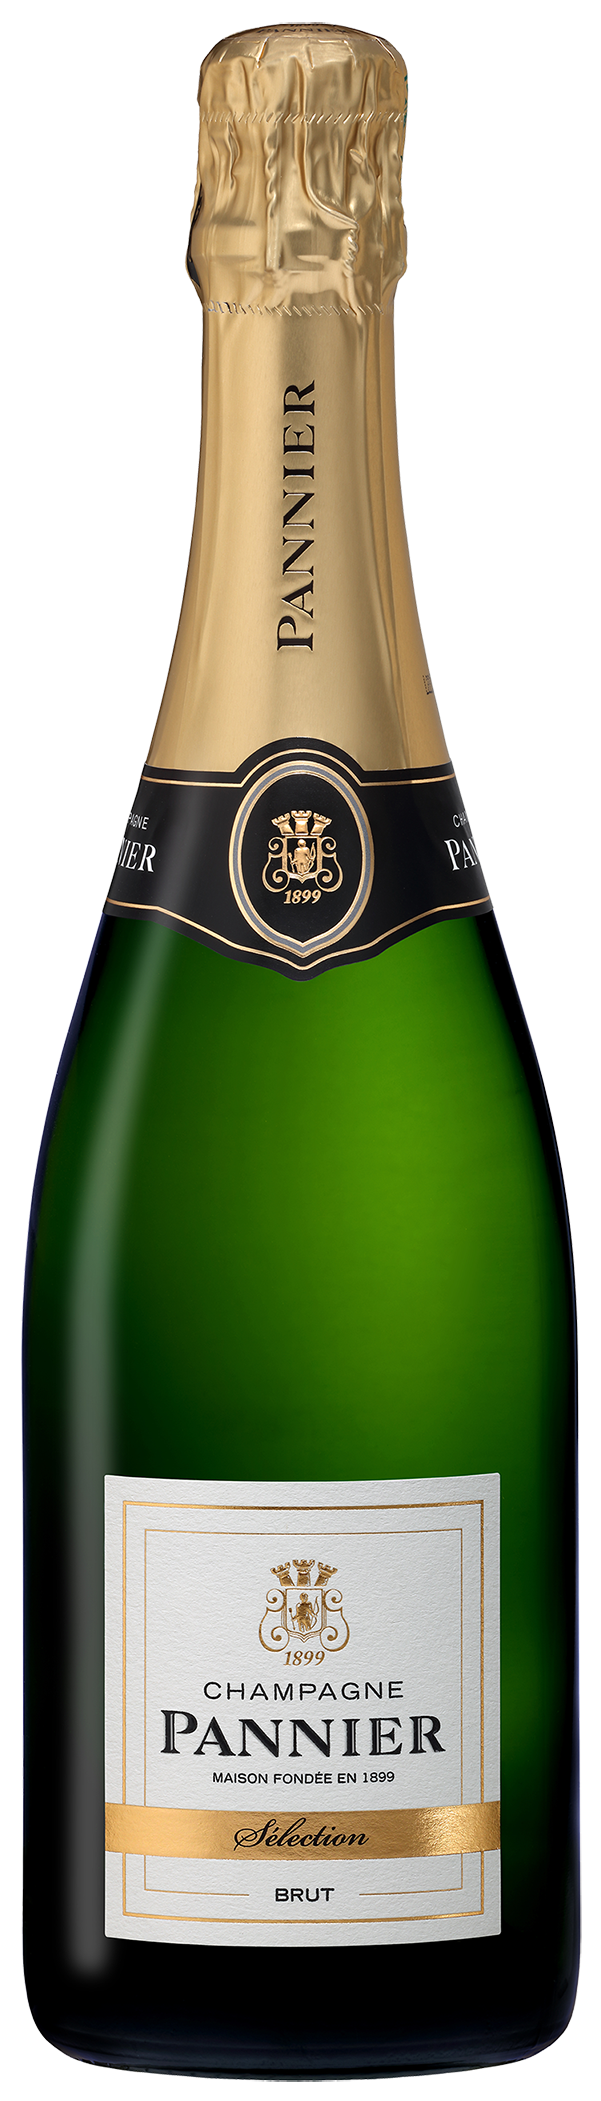 Champagne Pannier Brut Sélection (NV) (PF3206) - Tri-Vin Imports 